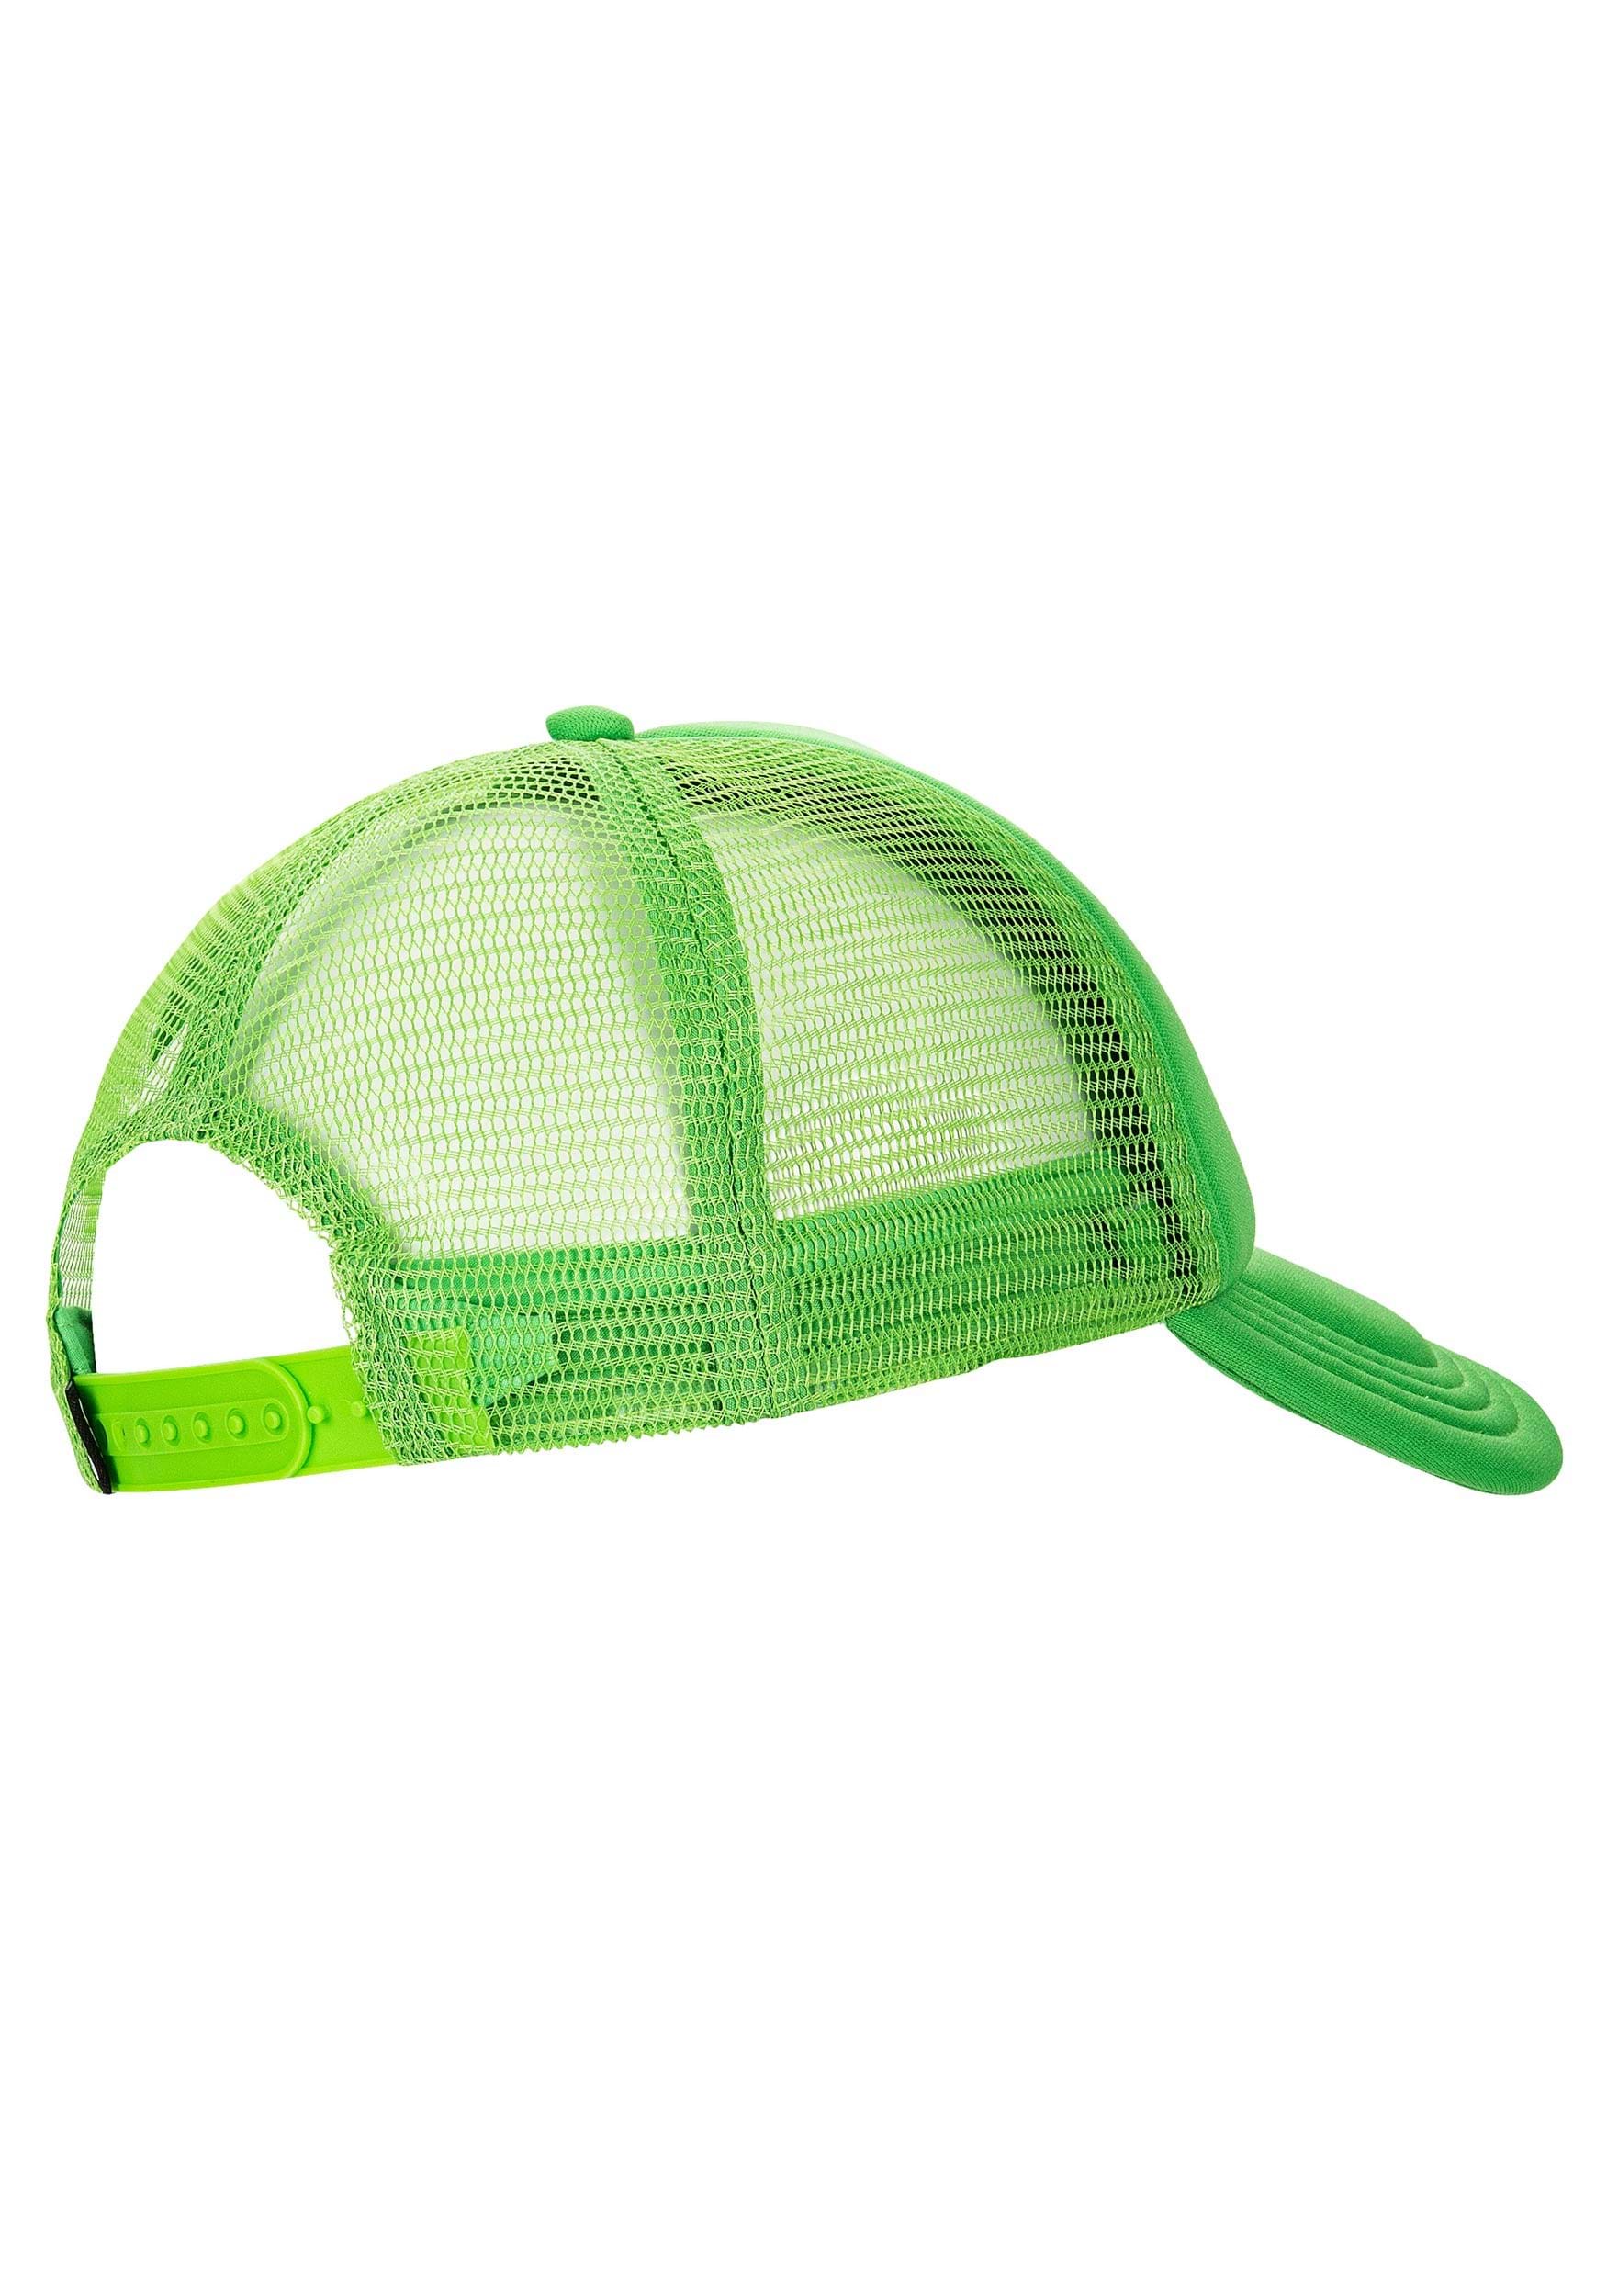 Ghostbusters Slime Green Trucker Hat